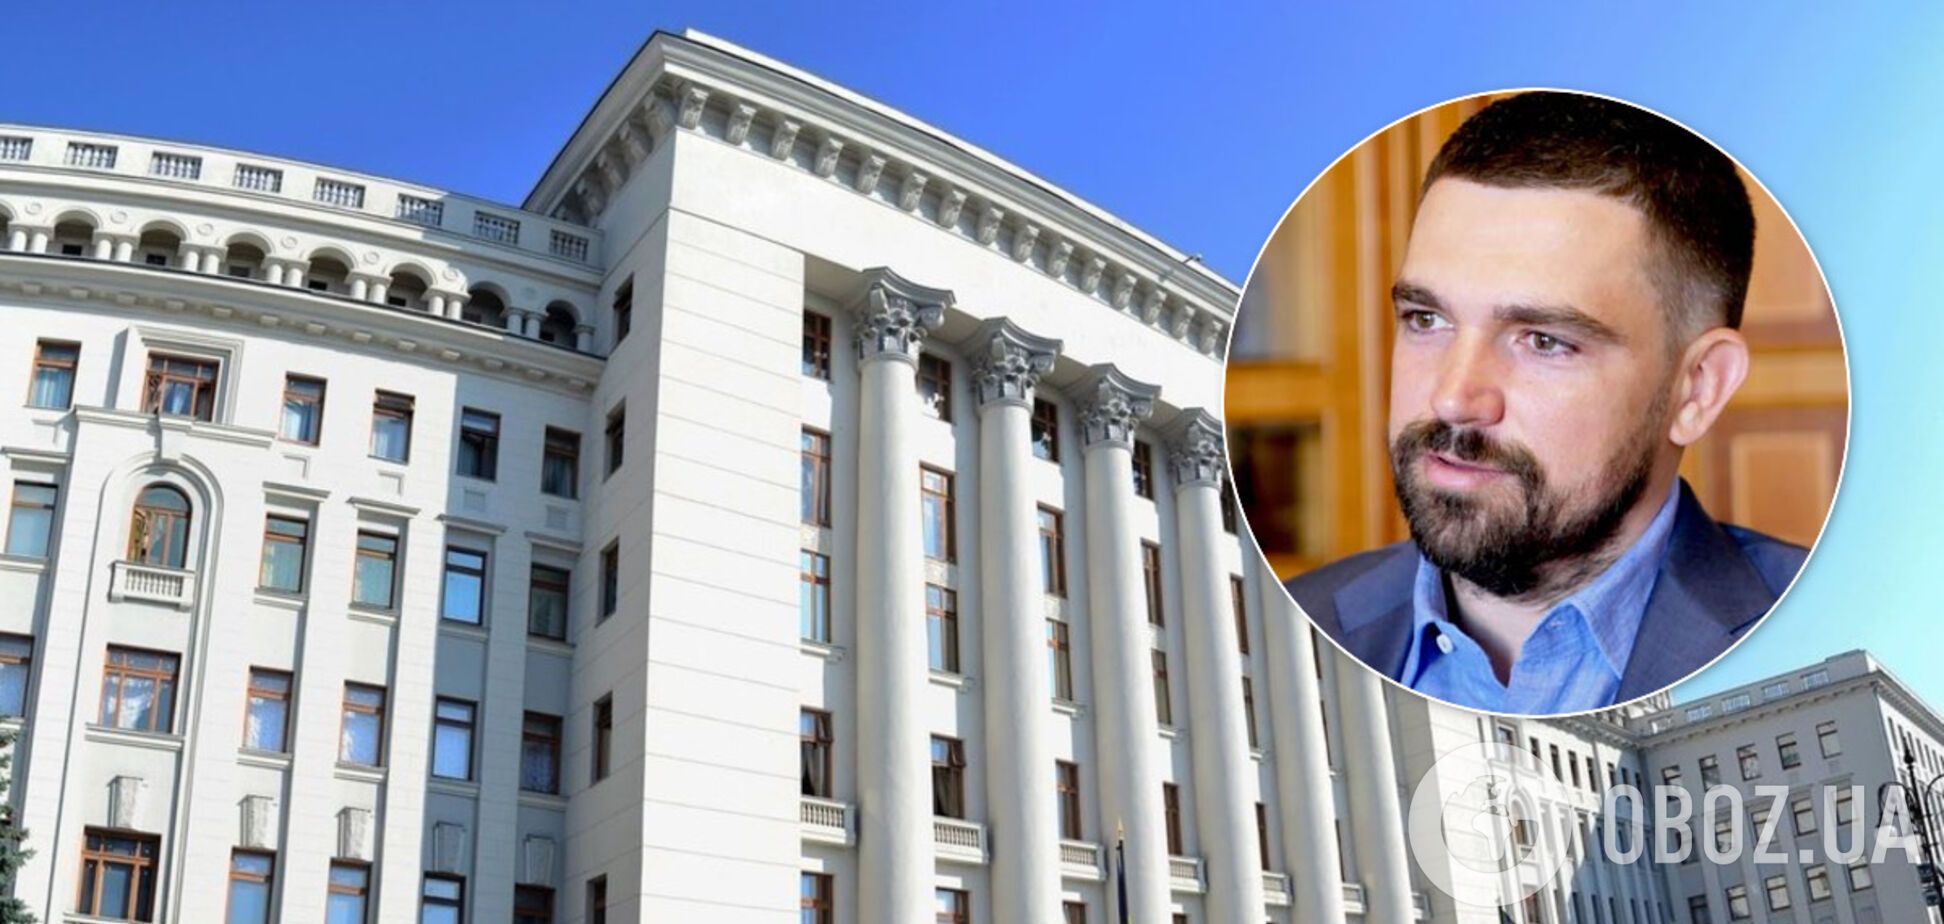 Трофимов рассказал о 'жуткой' атмосфере в здании Офиса президента